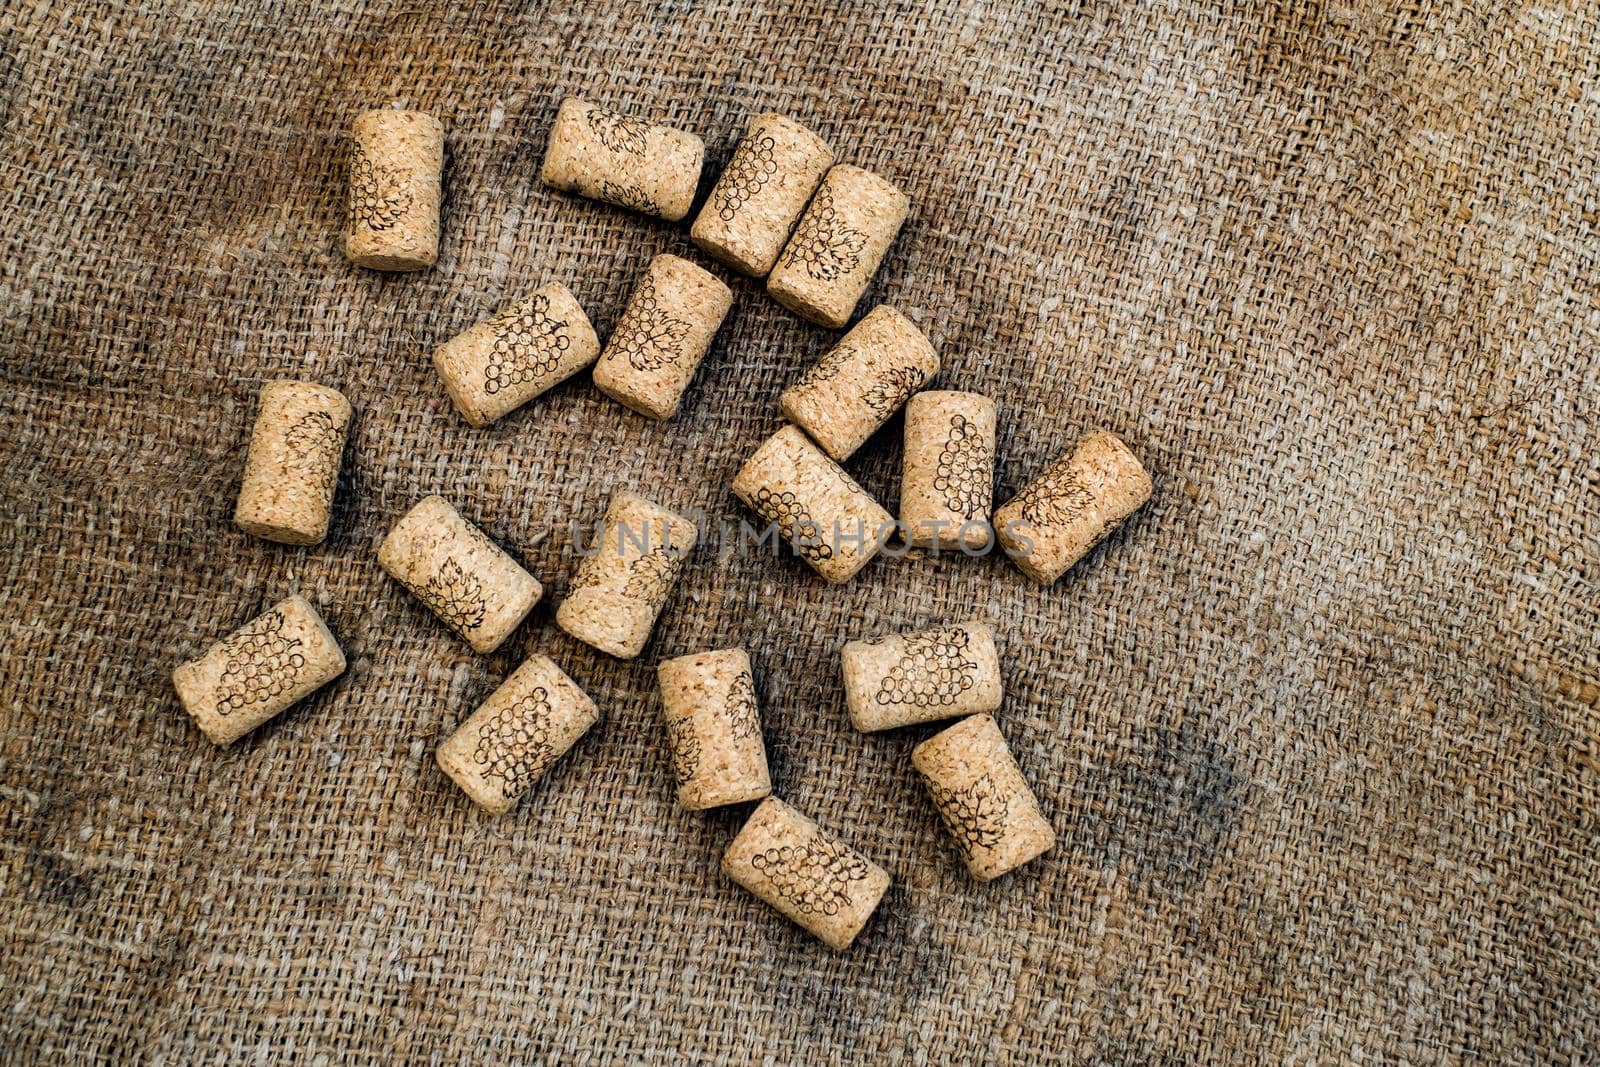 wine corks on jute sack by Roberto